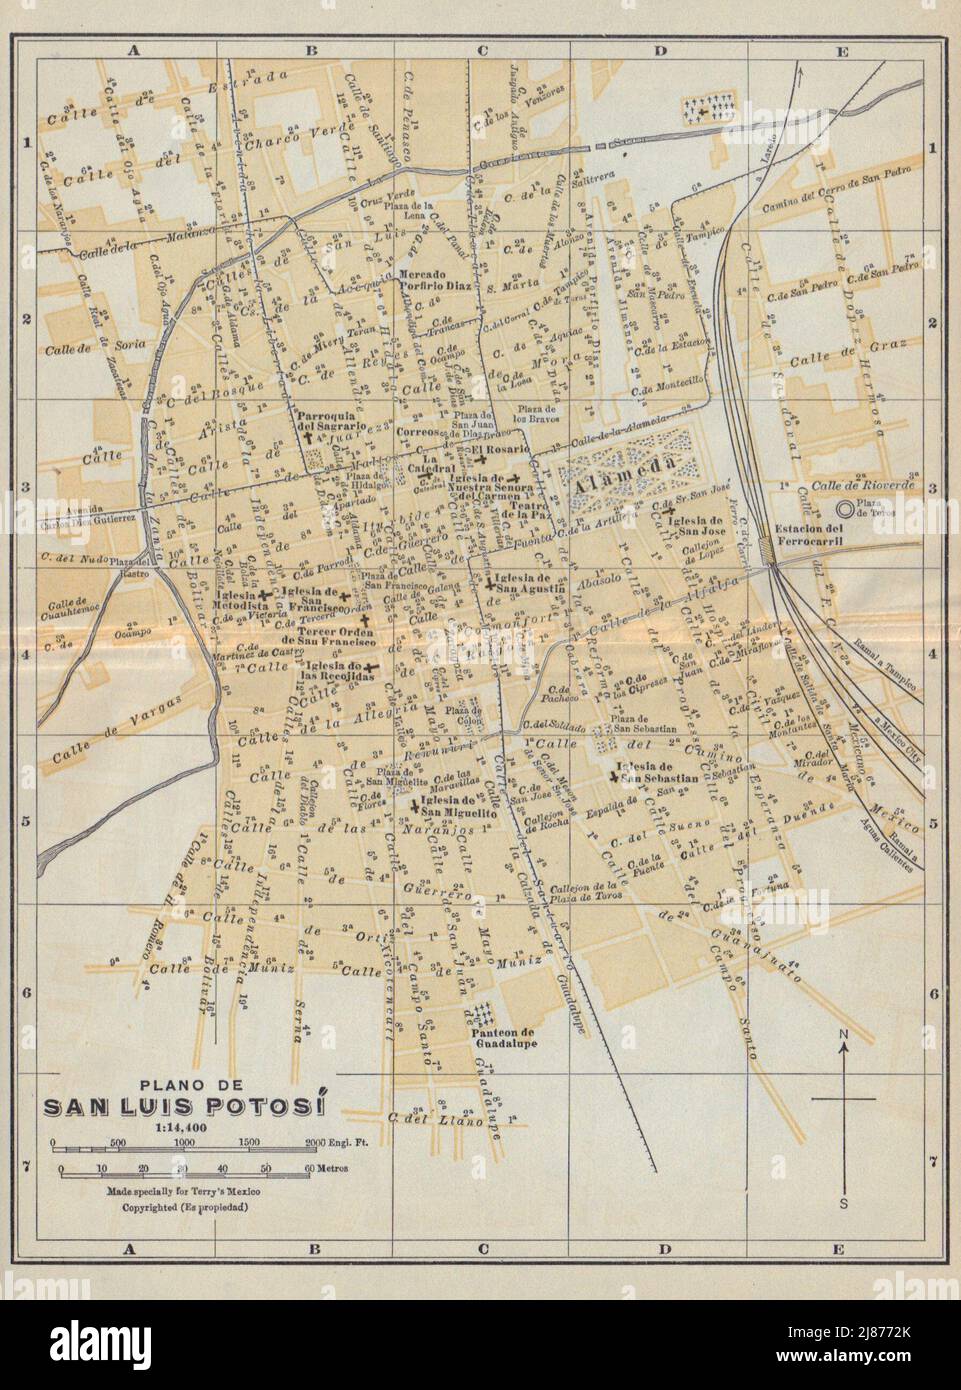 Plano de SAN LUIS POTOSI, Mexico. Mapa de la ciudad. City/town plan 1938 Stock Photo